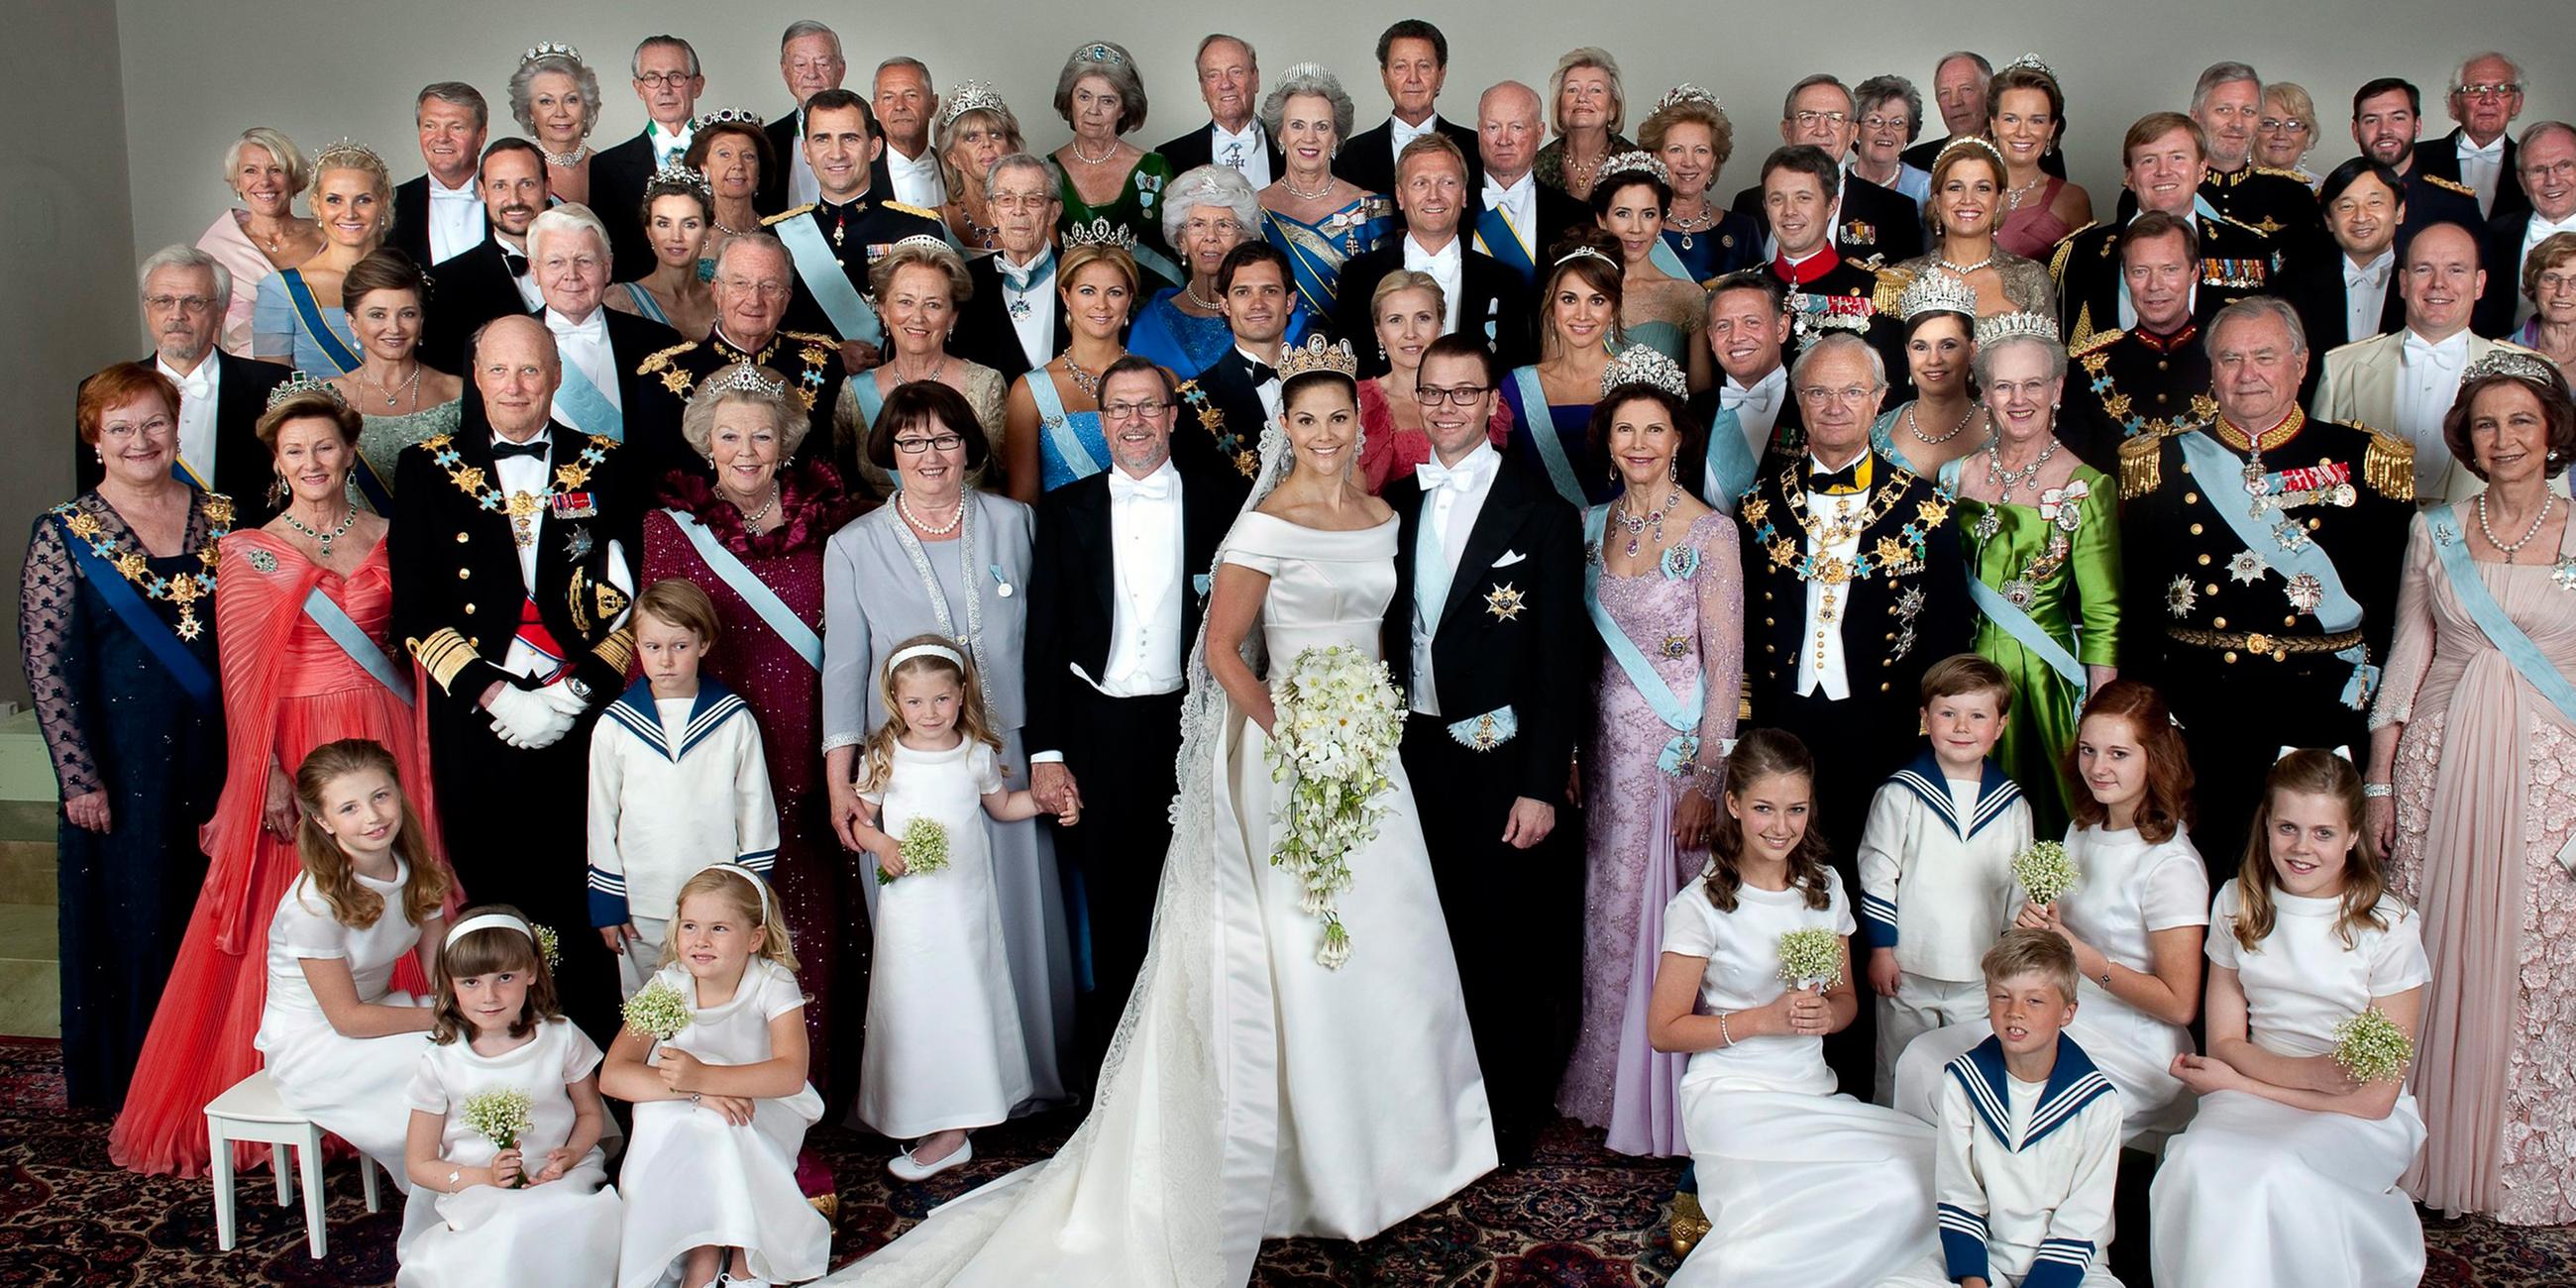 Archiv: Familienfoto bei der Hochzeit von Kronprinzessin Victoria von Schweden am 19.06.2010